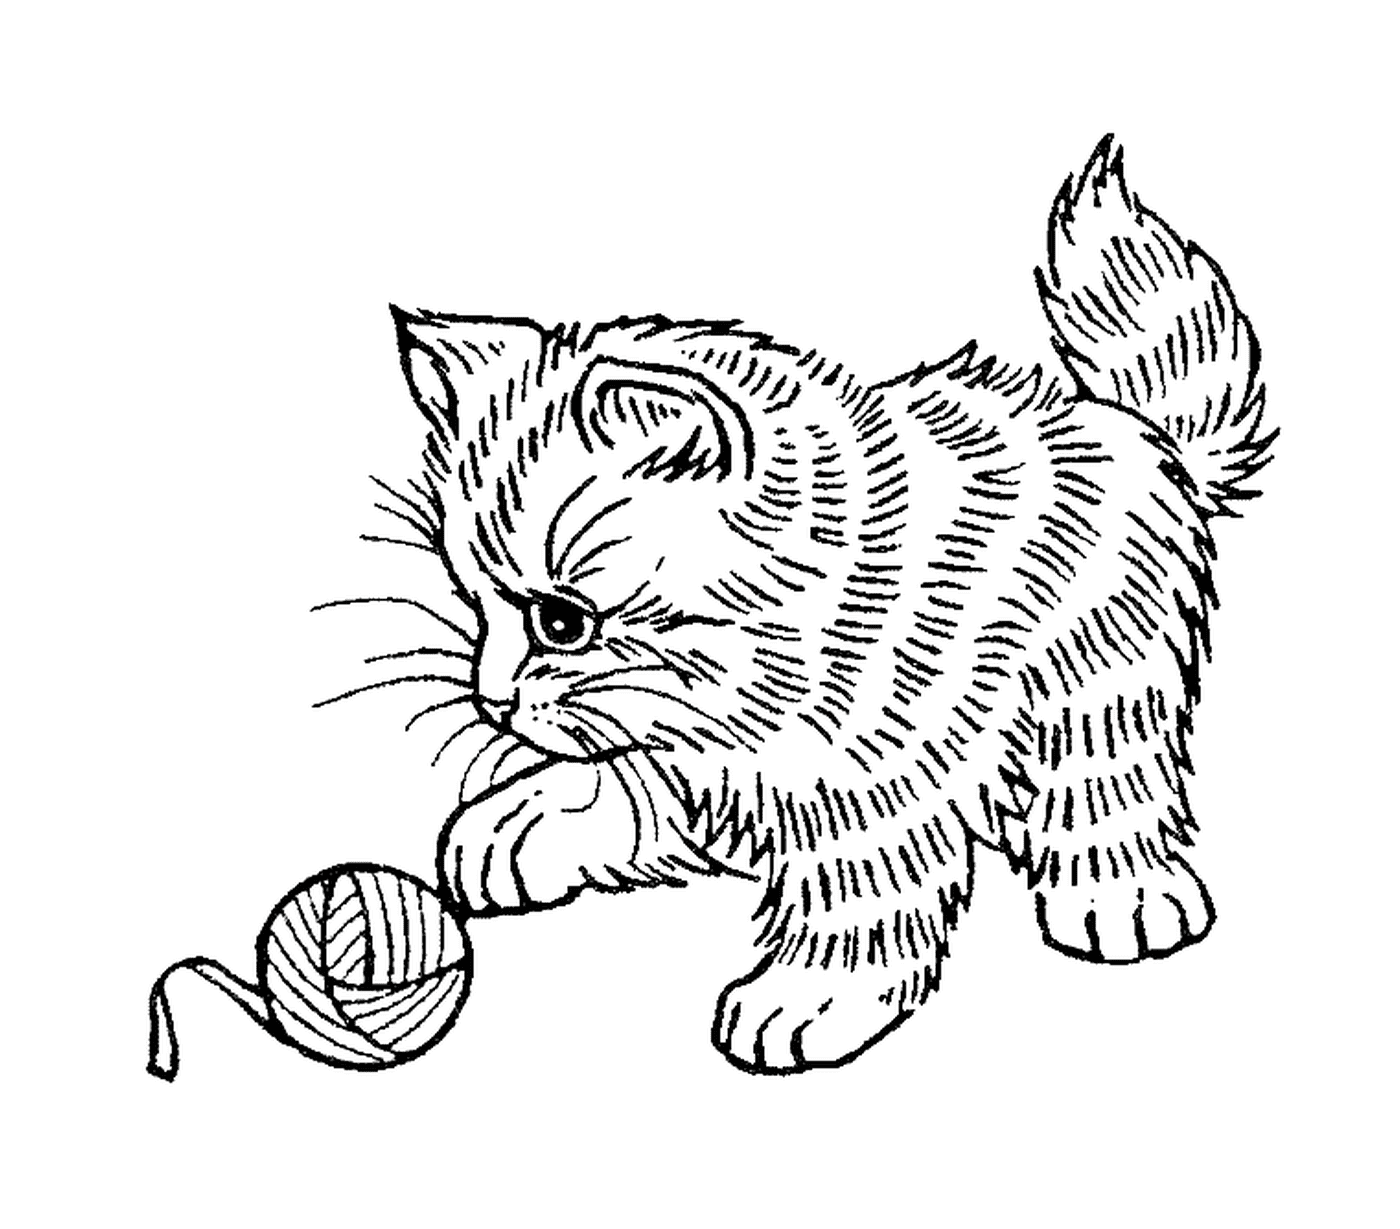  Un adorable gatito jugando con una bola de lana 